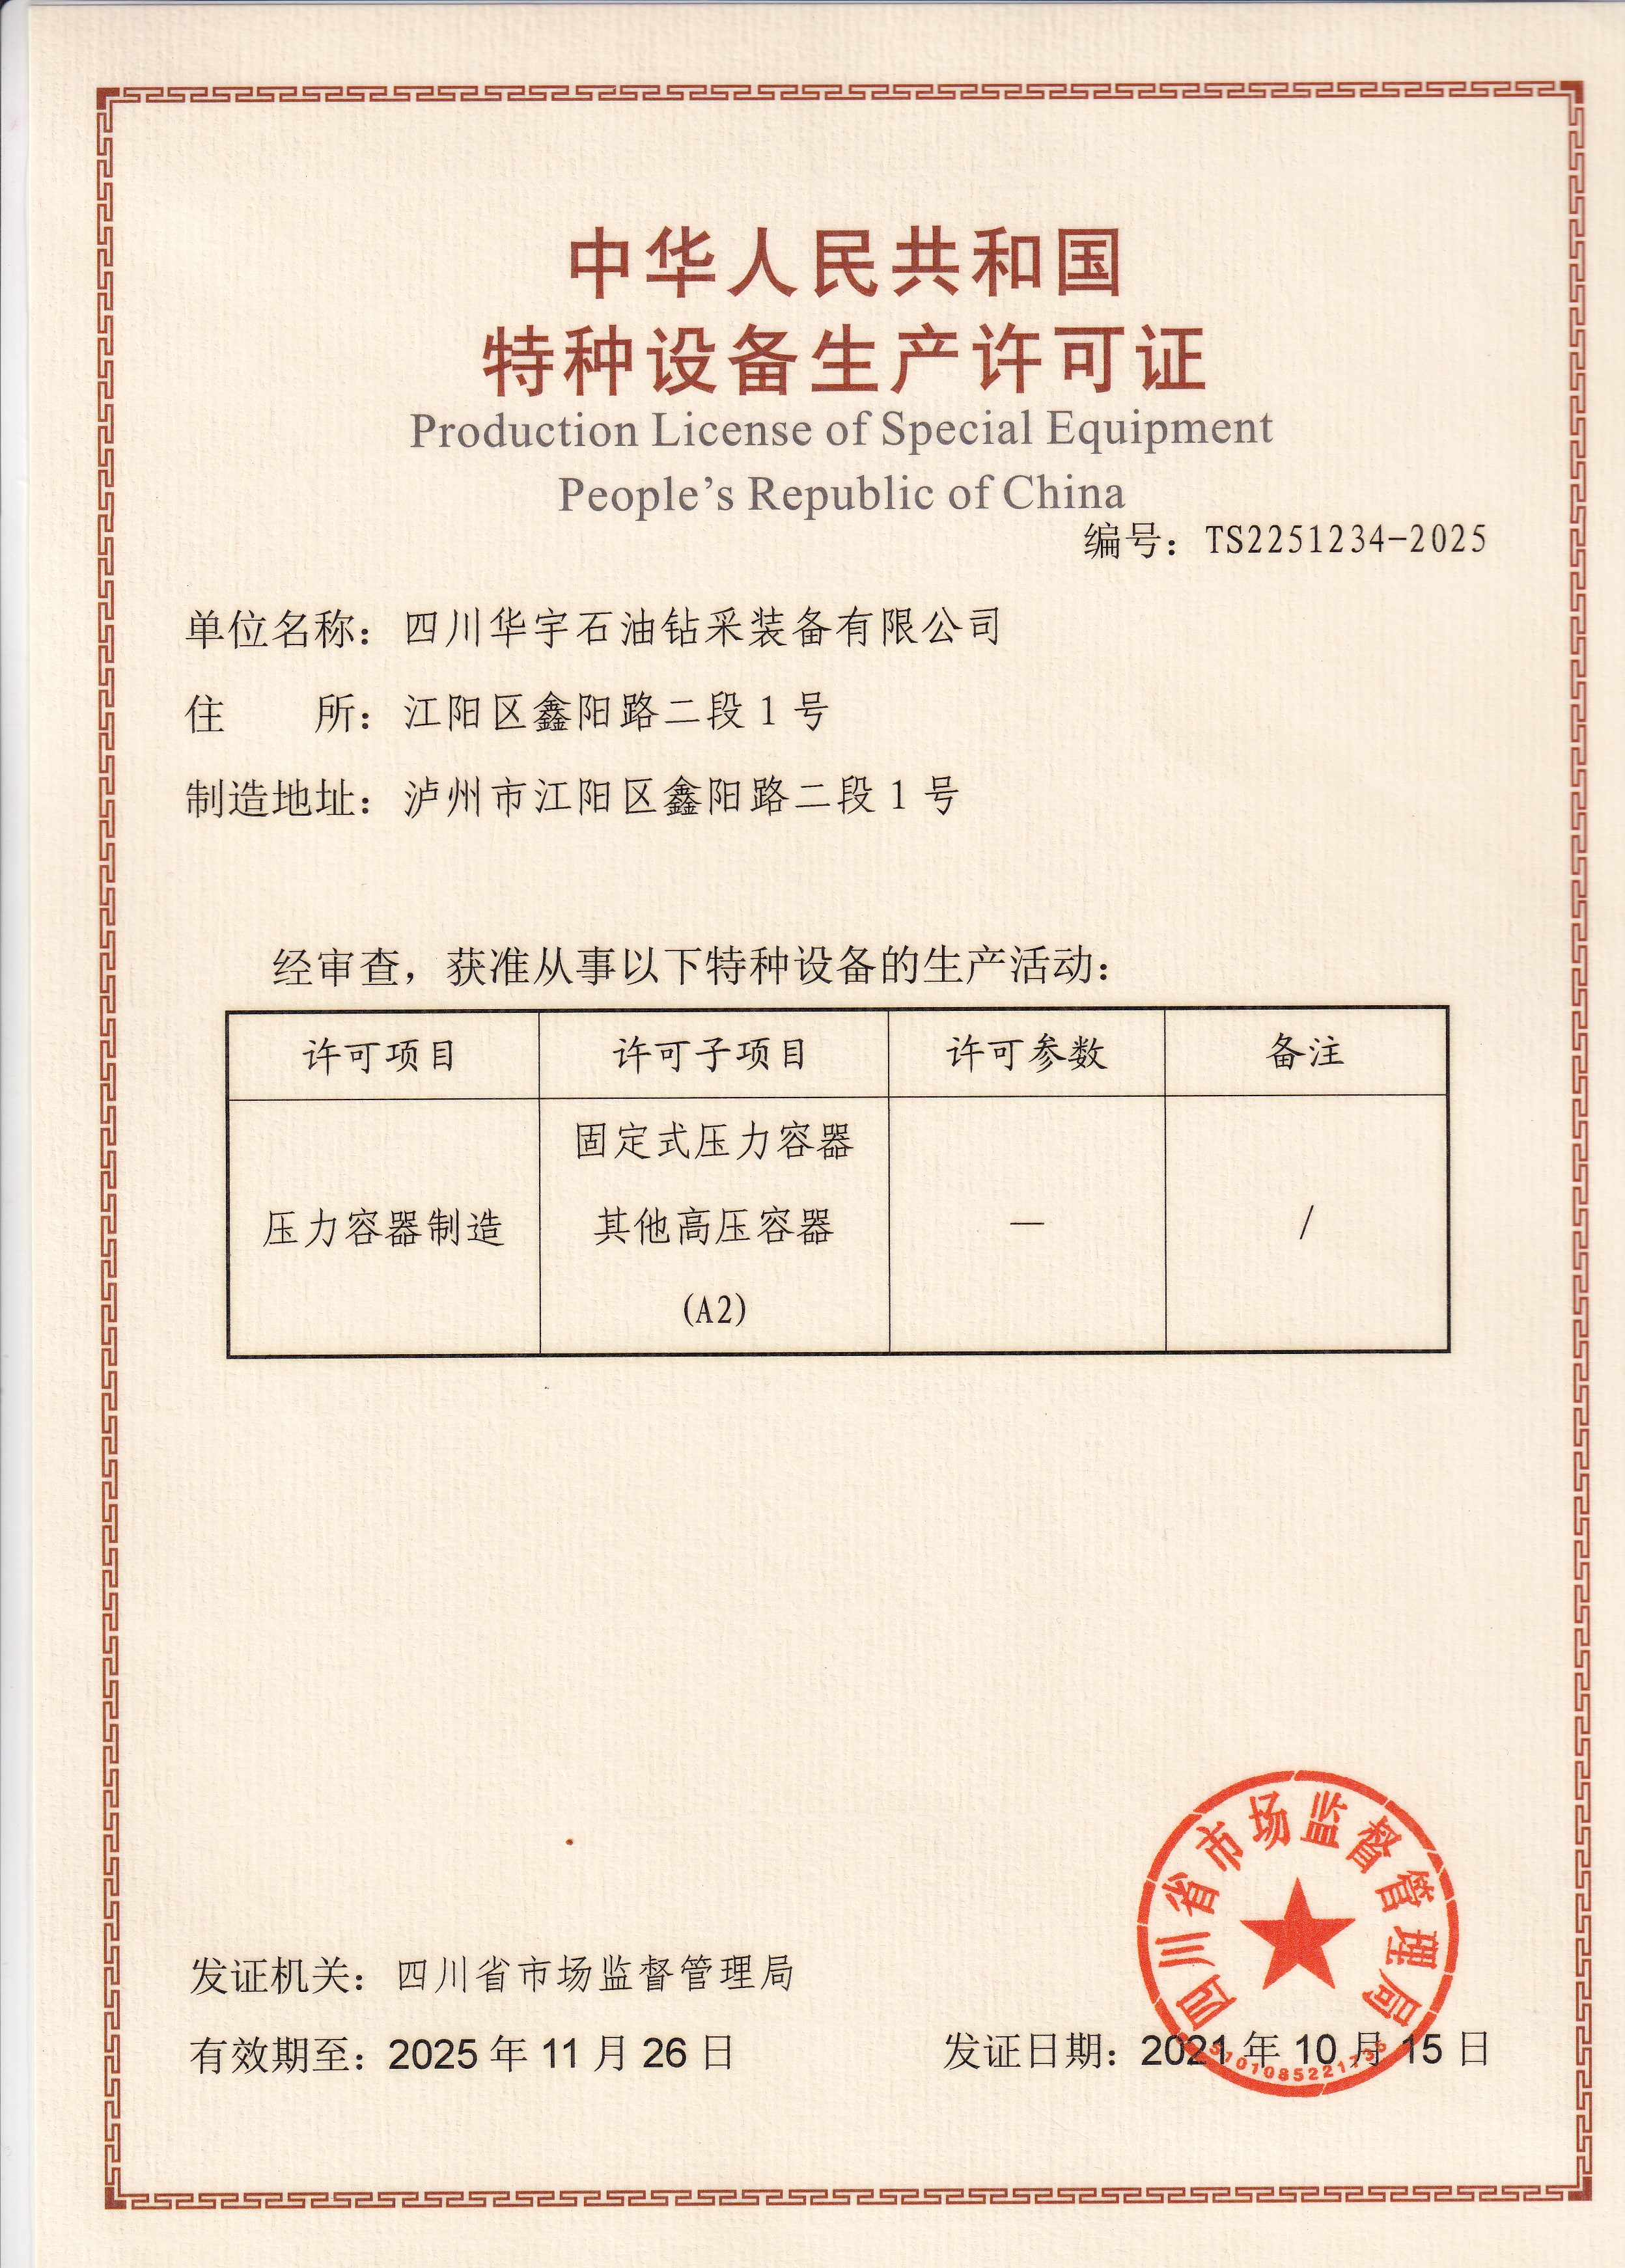 中华人名共和国特种设备生产许可证-压力容器制造